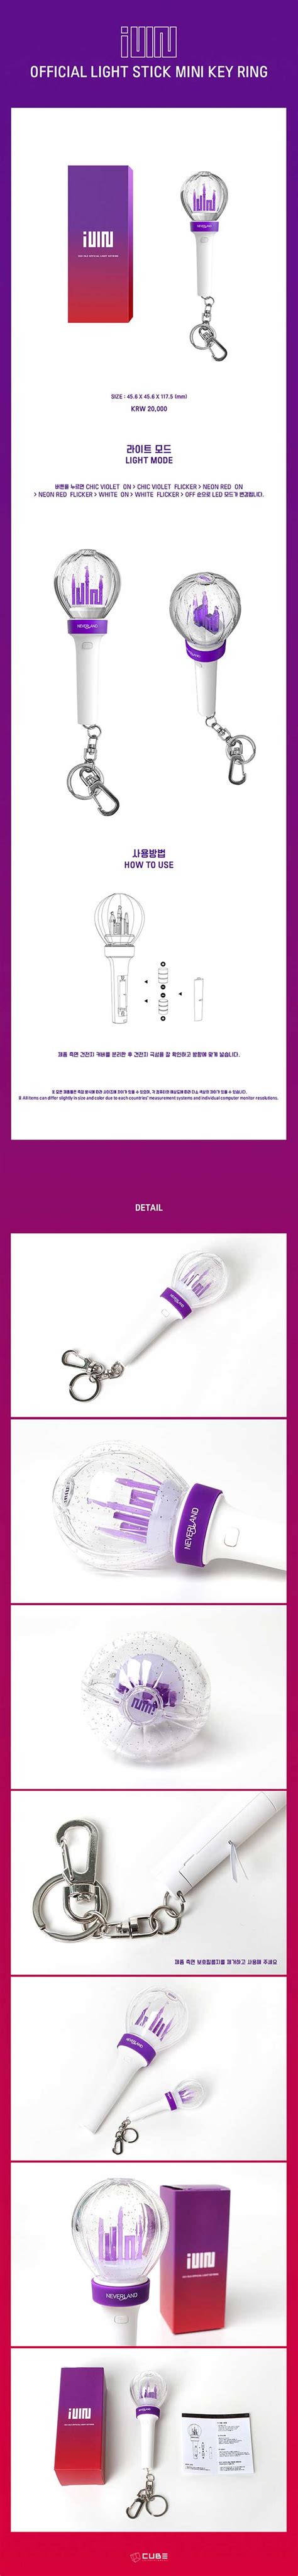 Gi Dle Official Light Stick Mini Keyring Kpophero